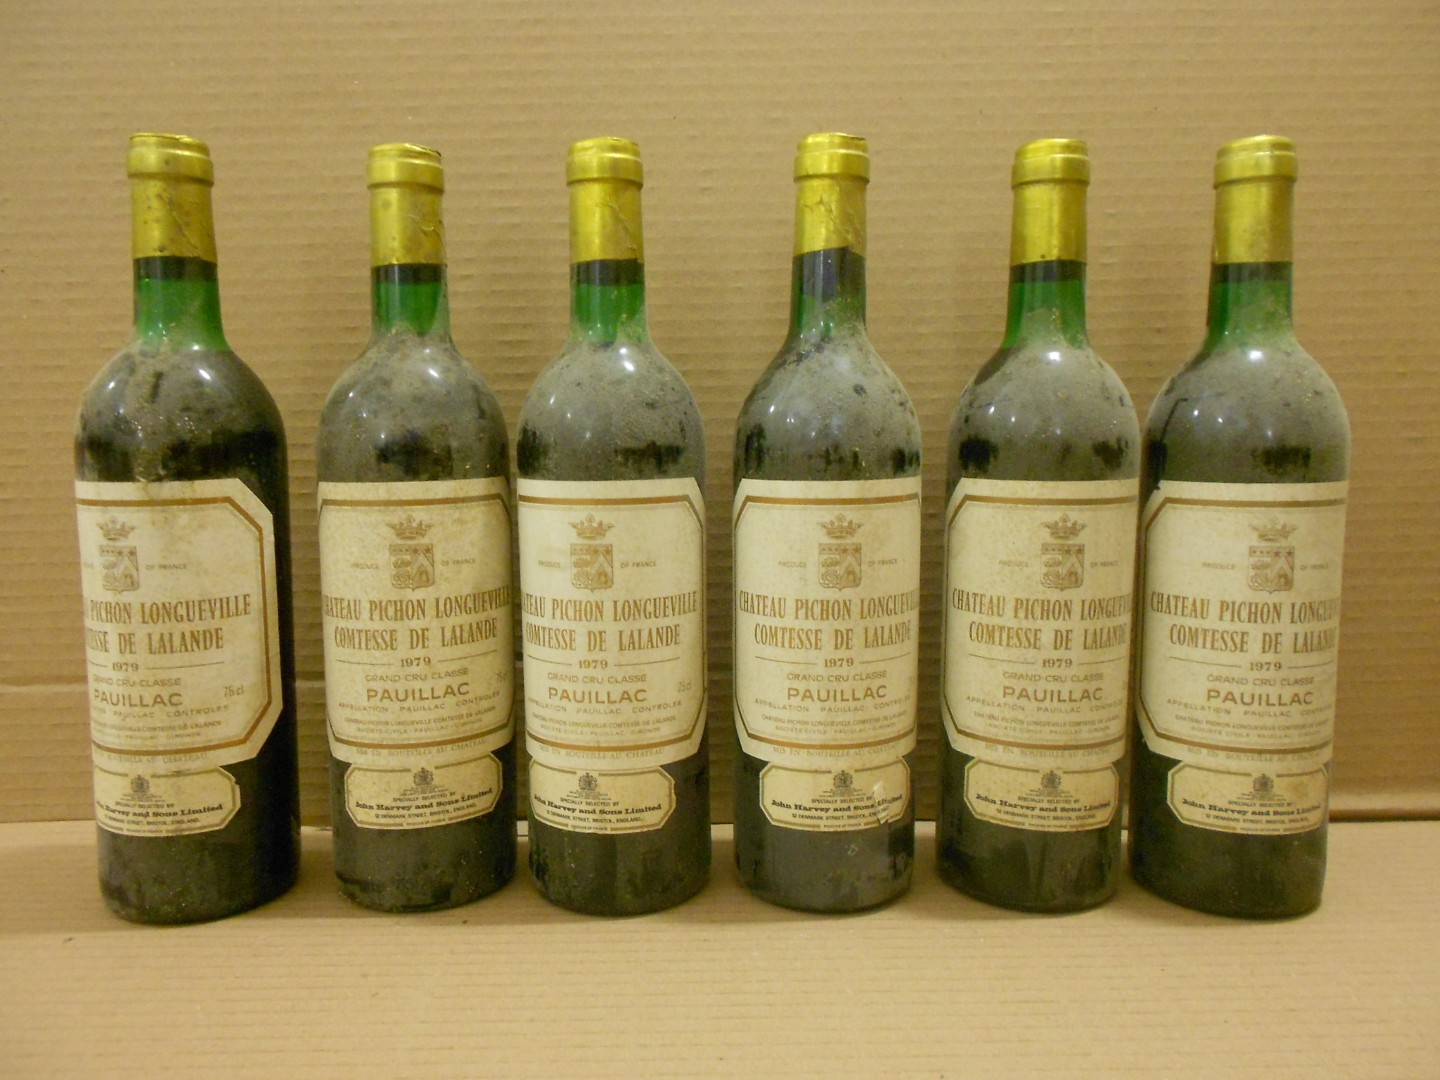 Chateau Pichon Longueville, Comtesse de Lalande, Pauillac 2eme Cru 1979, twelve bottles. Removed - Image 2 of 2